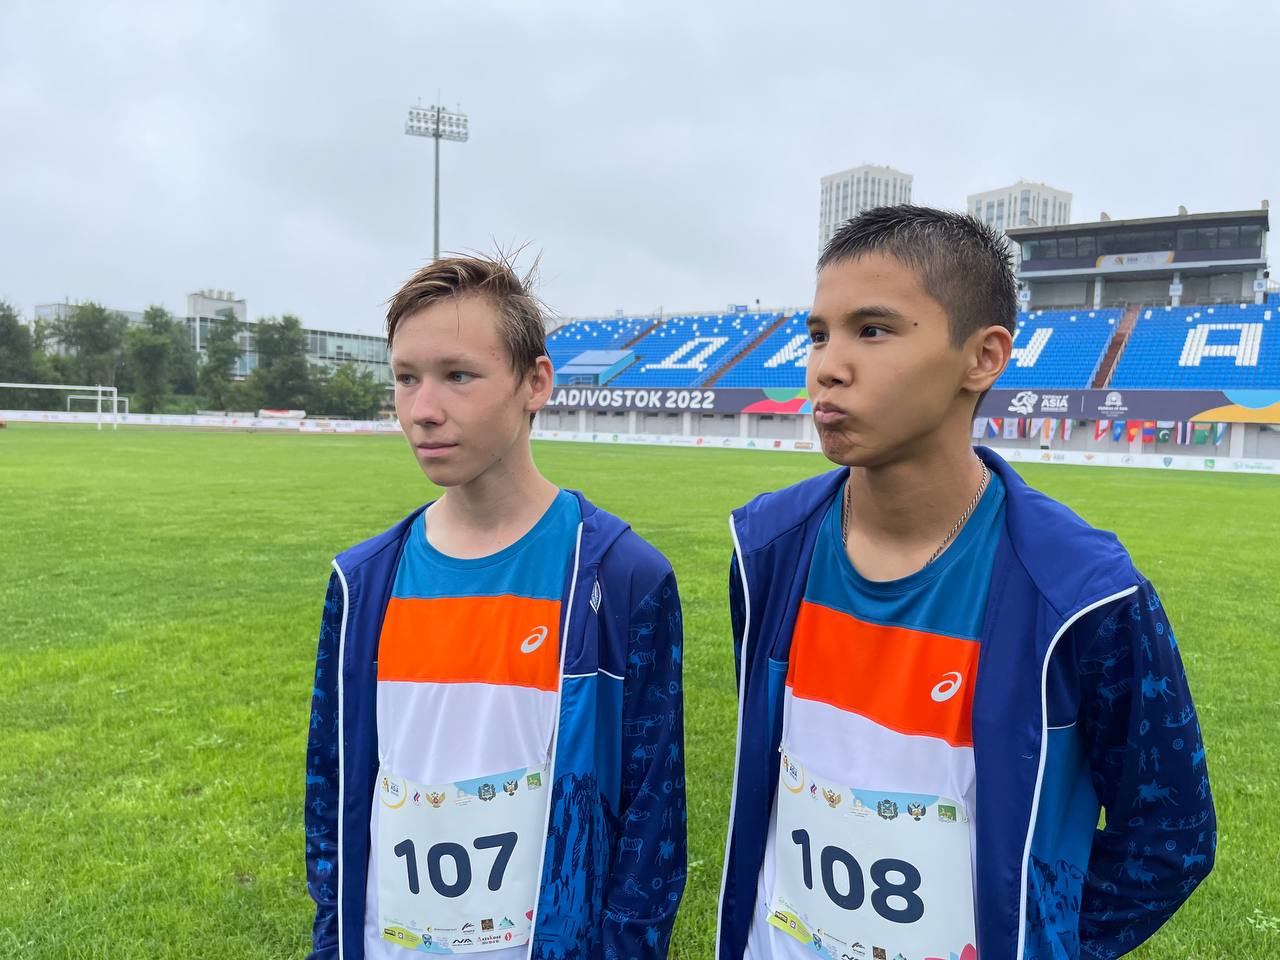 Медалисты-легкоатлеты из Якутии: Второй день соревнований на «Детях Азии» был сложнее из-за погоды